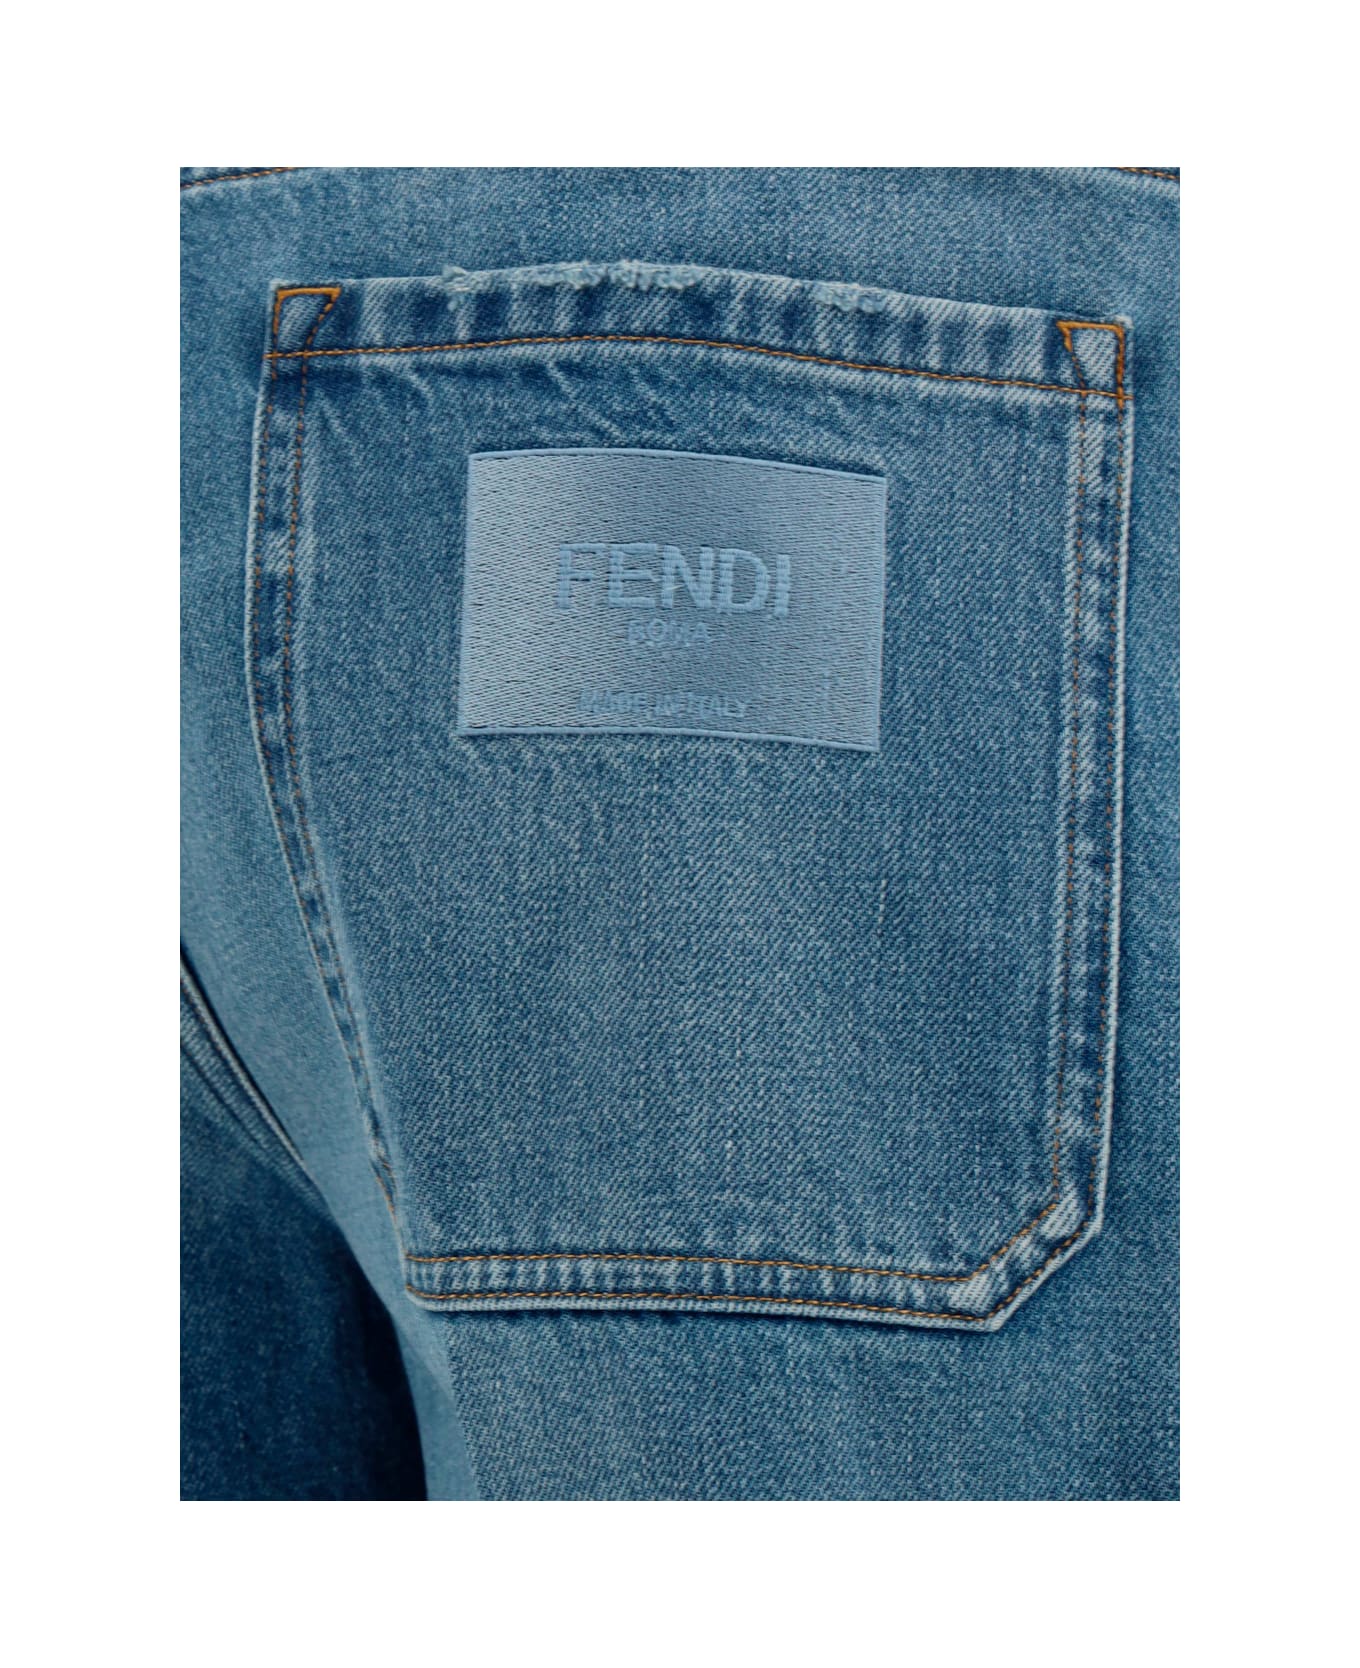 Fendi Denim Bermuda Shorts - Dark Blu ショートパンツ